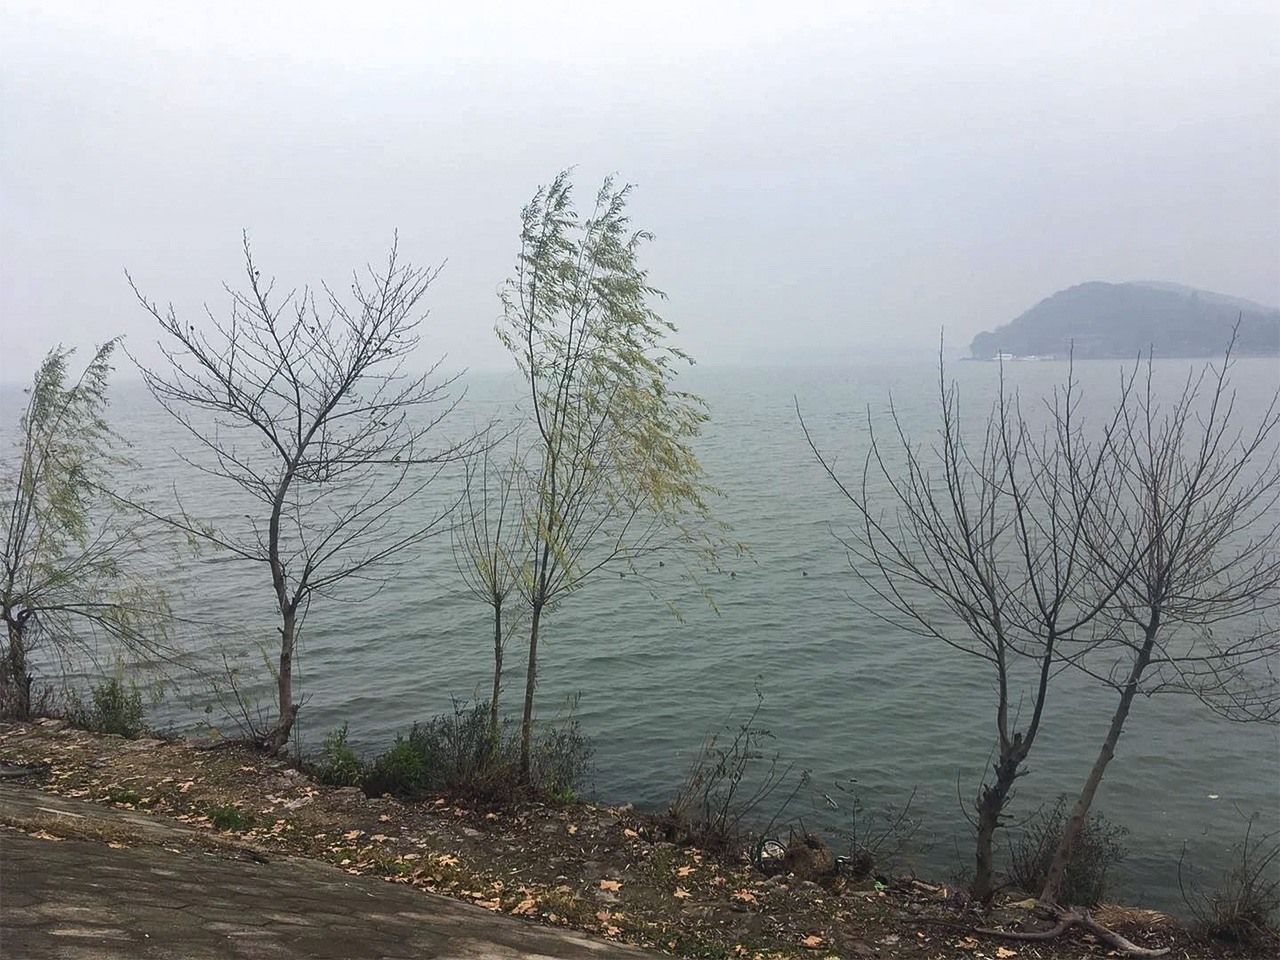  يوجد في مدينة ووهان، المدينة الرئيسية في حوض نهر اليانغتسي الأوسط، العديد من البحيرات، وهي ”مدينة مائية“ ذات مناظر خلابة. التصوير في ضفة النهر بالقرب من الجامعة قبل إغلاق المدينة. كانت أشجار الصفصاف مخضرة.